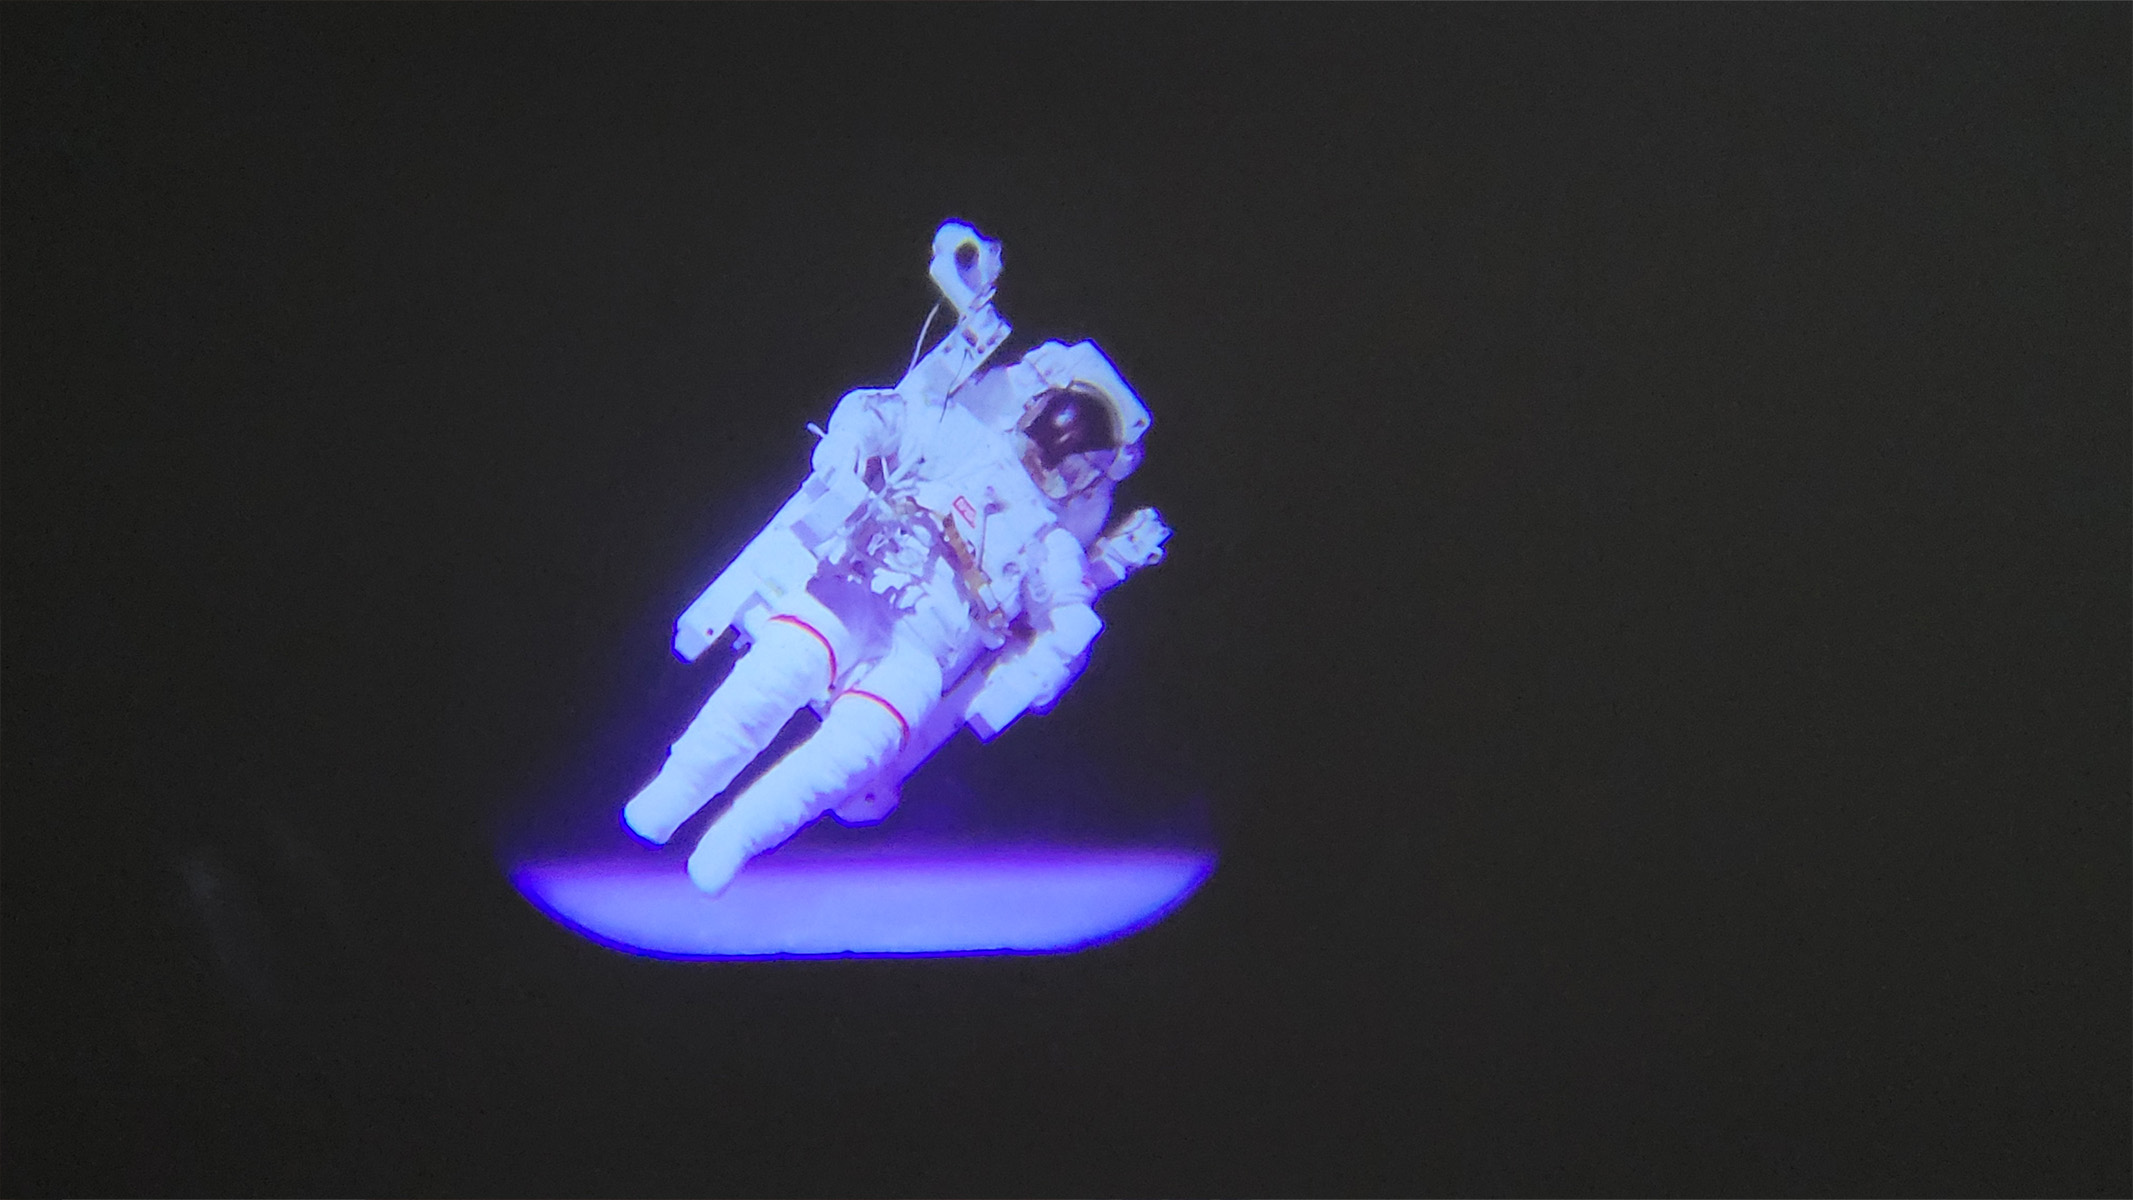 L'image montre une projection d'un astronaute faisant un tour de l'espace